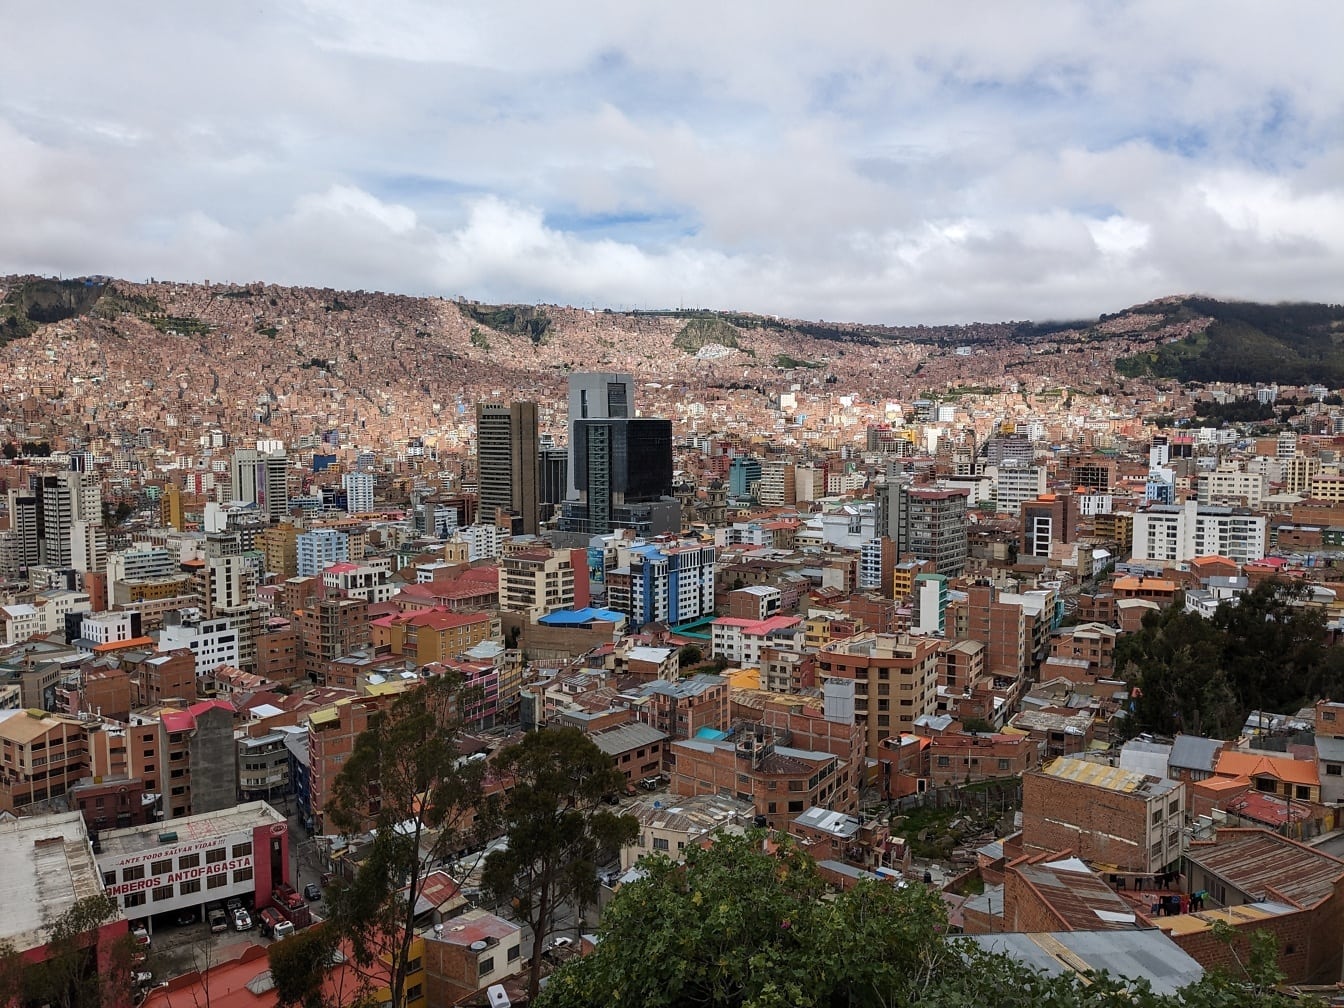 Mirador Killi Killi panorámás városképe La Paz városával Bolíviában sok épülettel